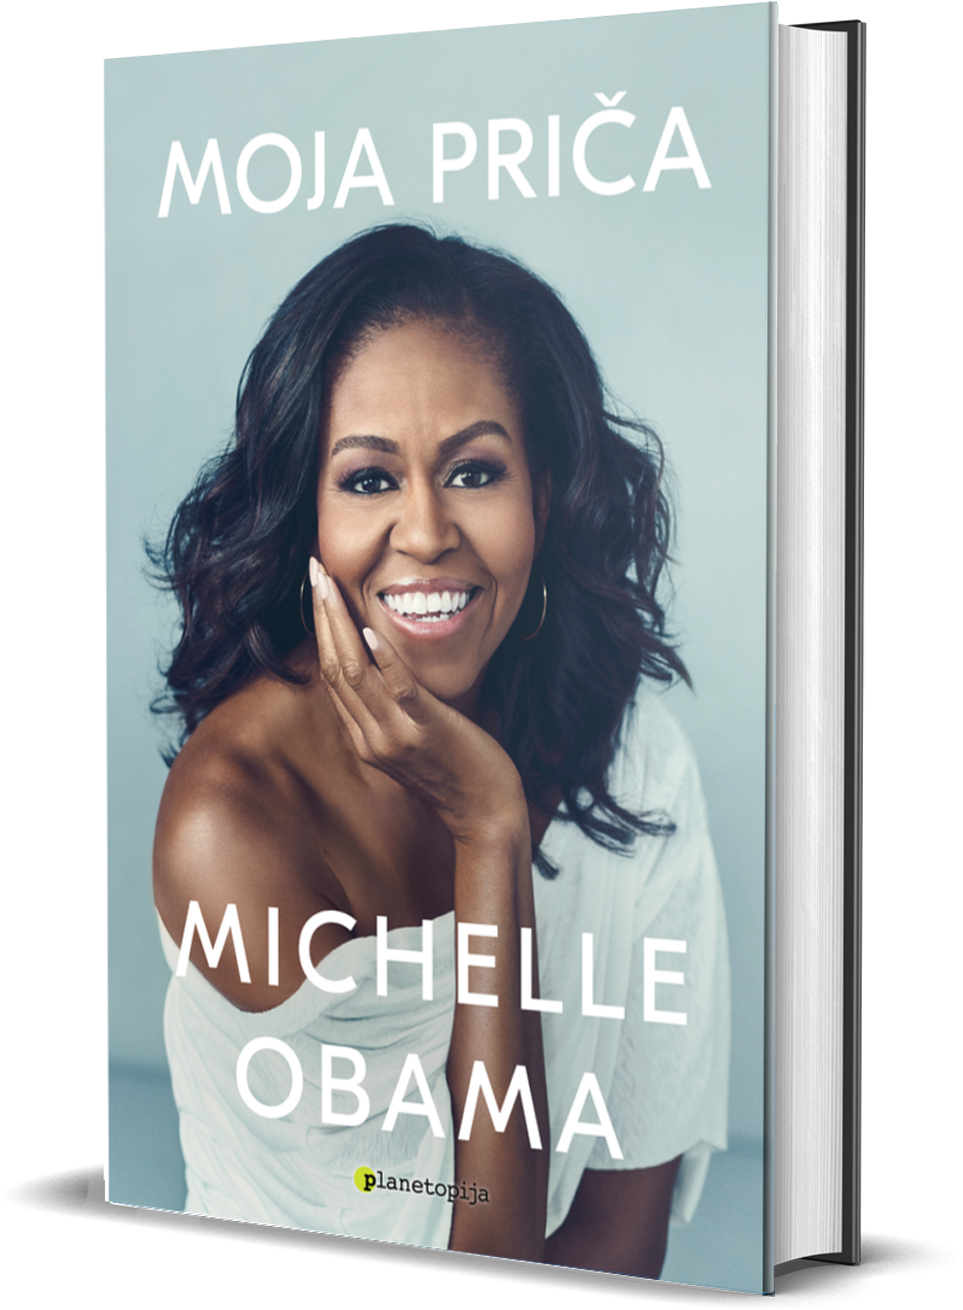 Moja priča, Michelle Obama